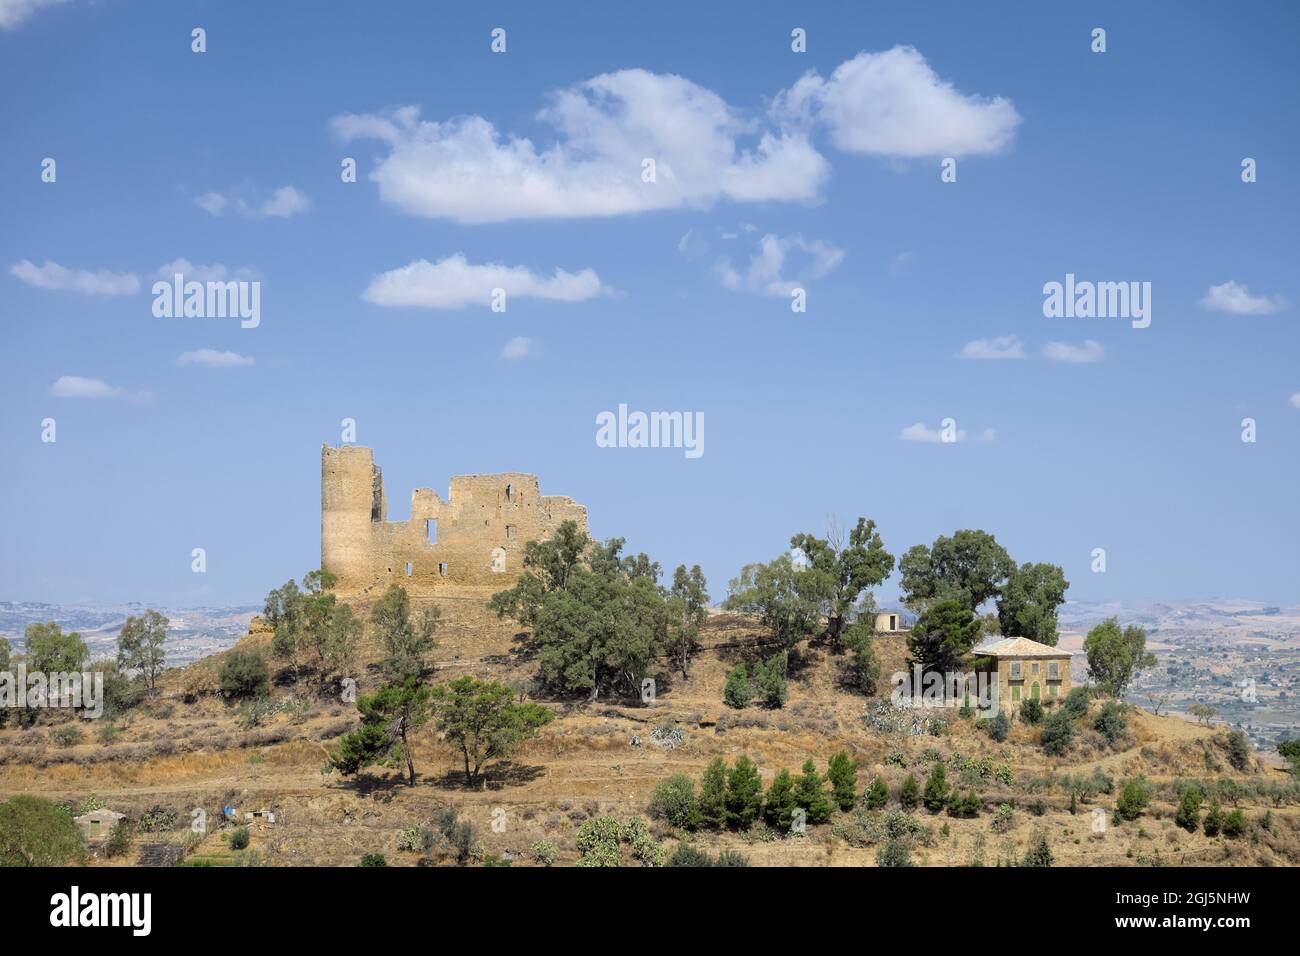 Storico castello di Sicilia nel comune di Mazzarino (Caltanissetta) contro il cielo blu con nuvole bianche Foto Stock